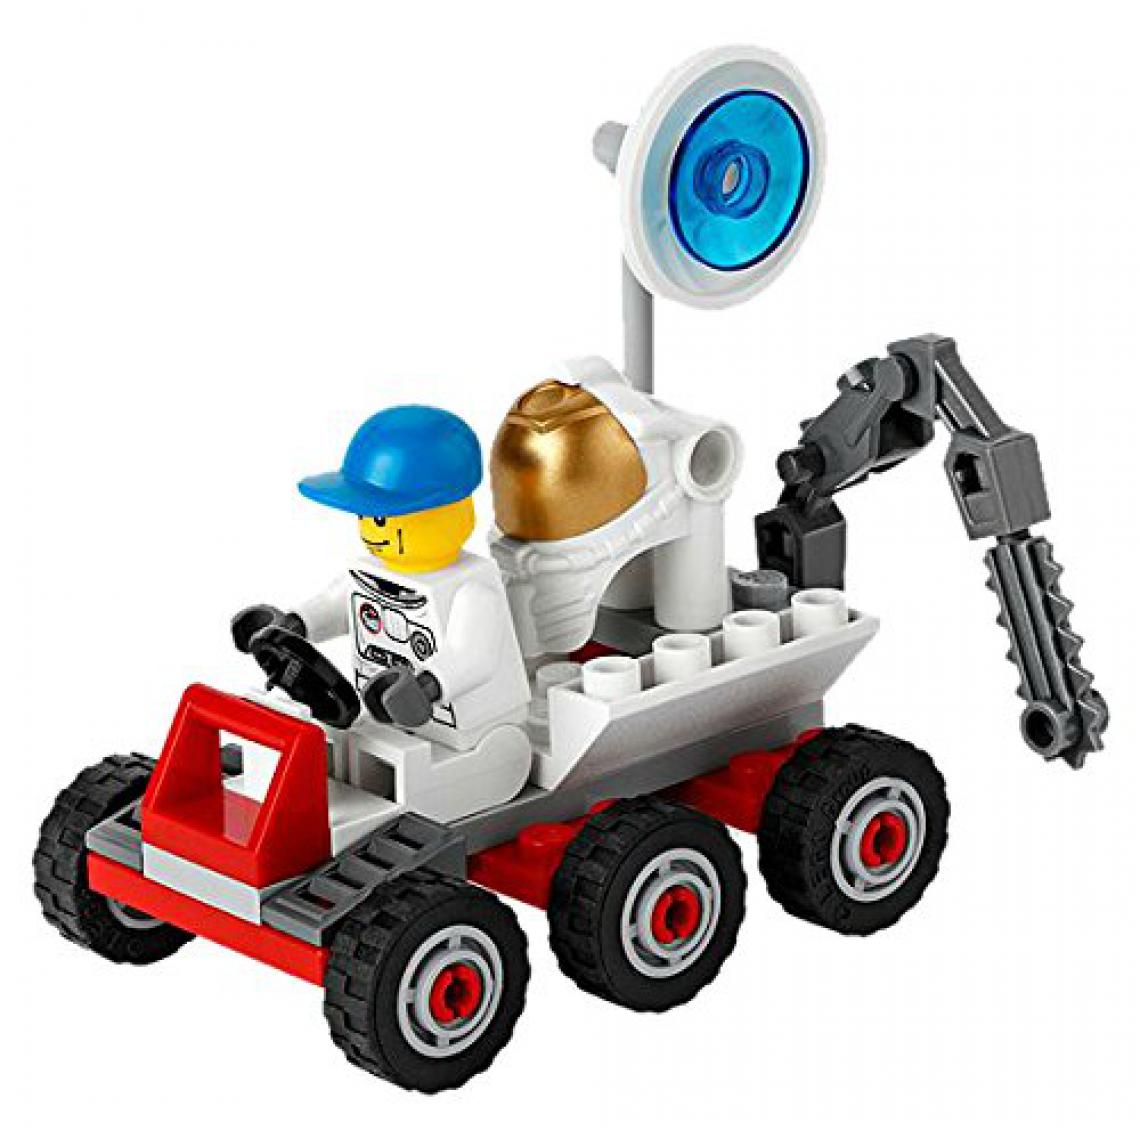 Lego - Buggy LEgO Space Moon 3365 - Briques et blocs